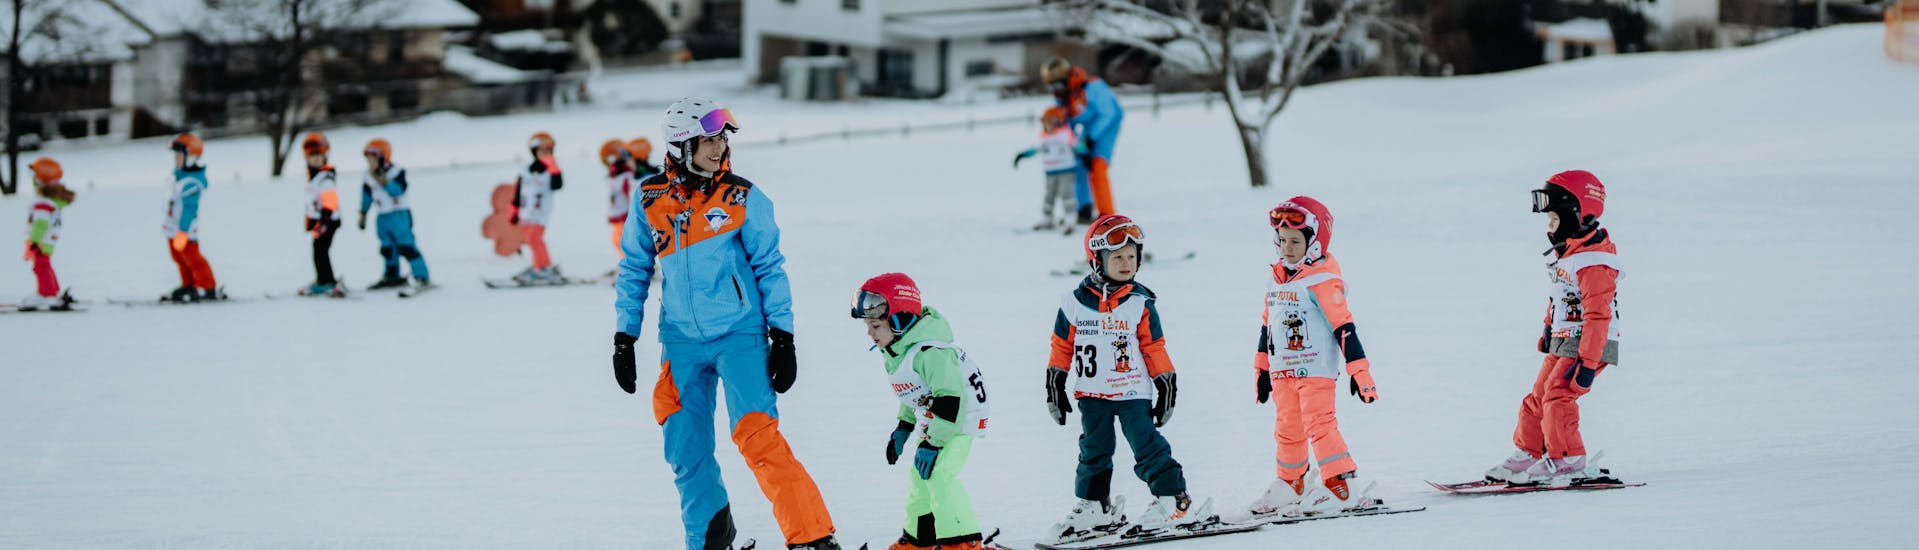 Kids Ski Lessons (4-12 y.) "Kinderland Rinn" for All Levels.